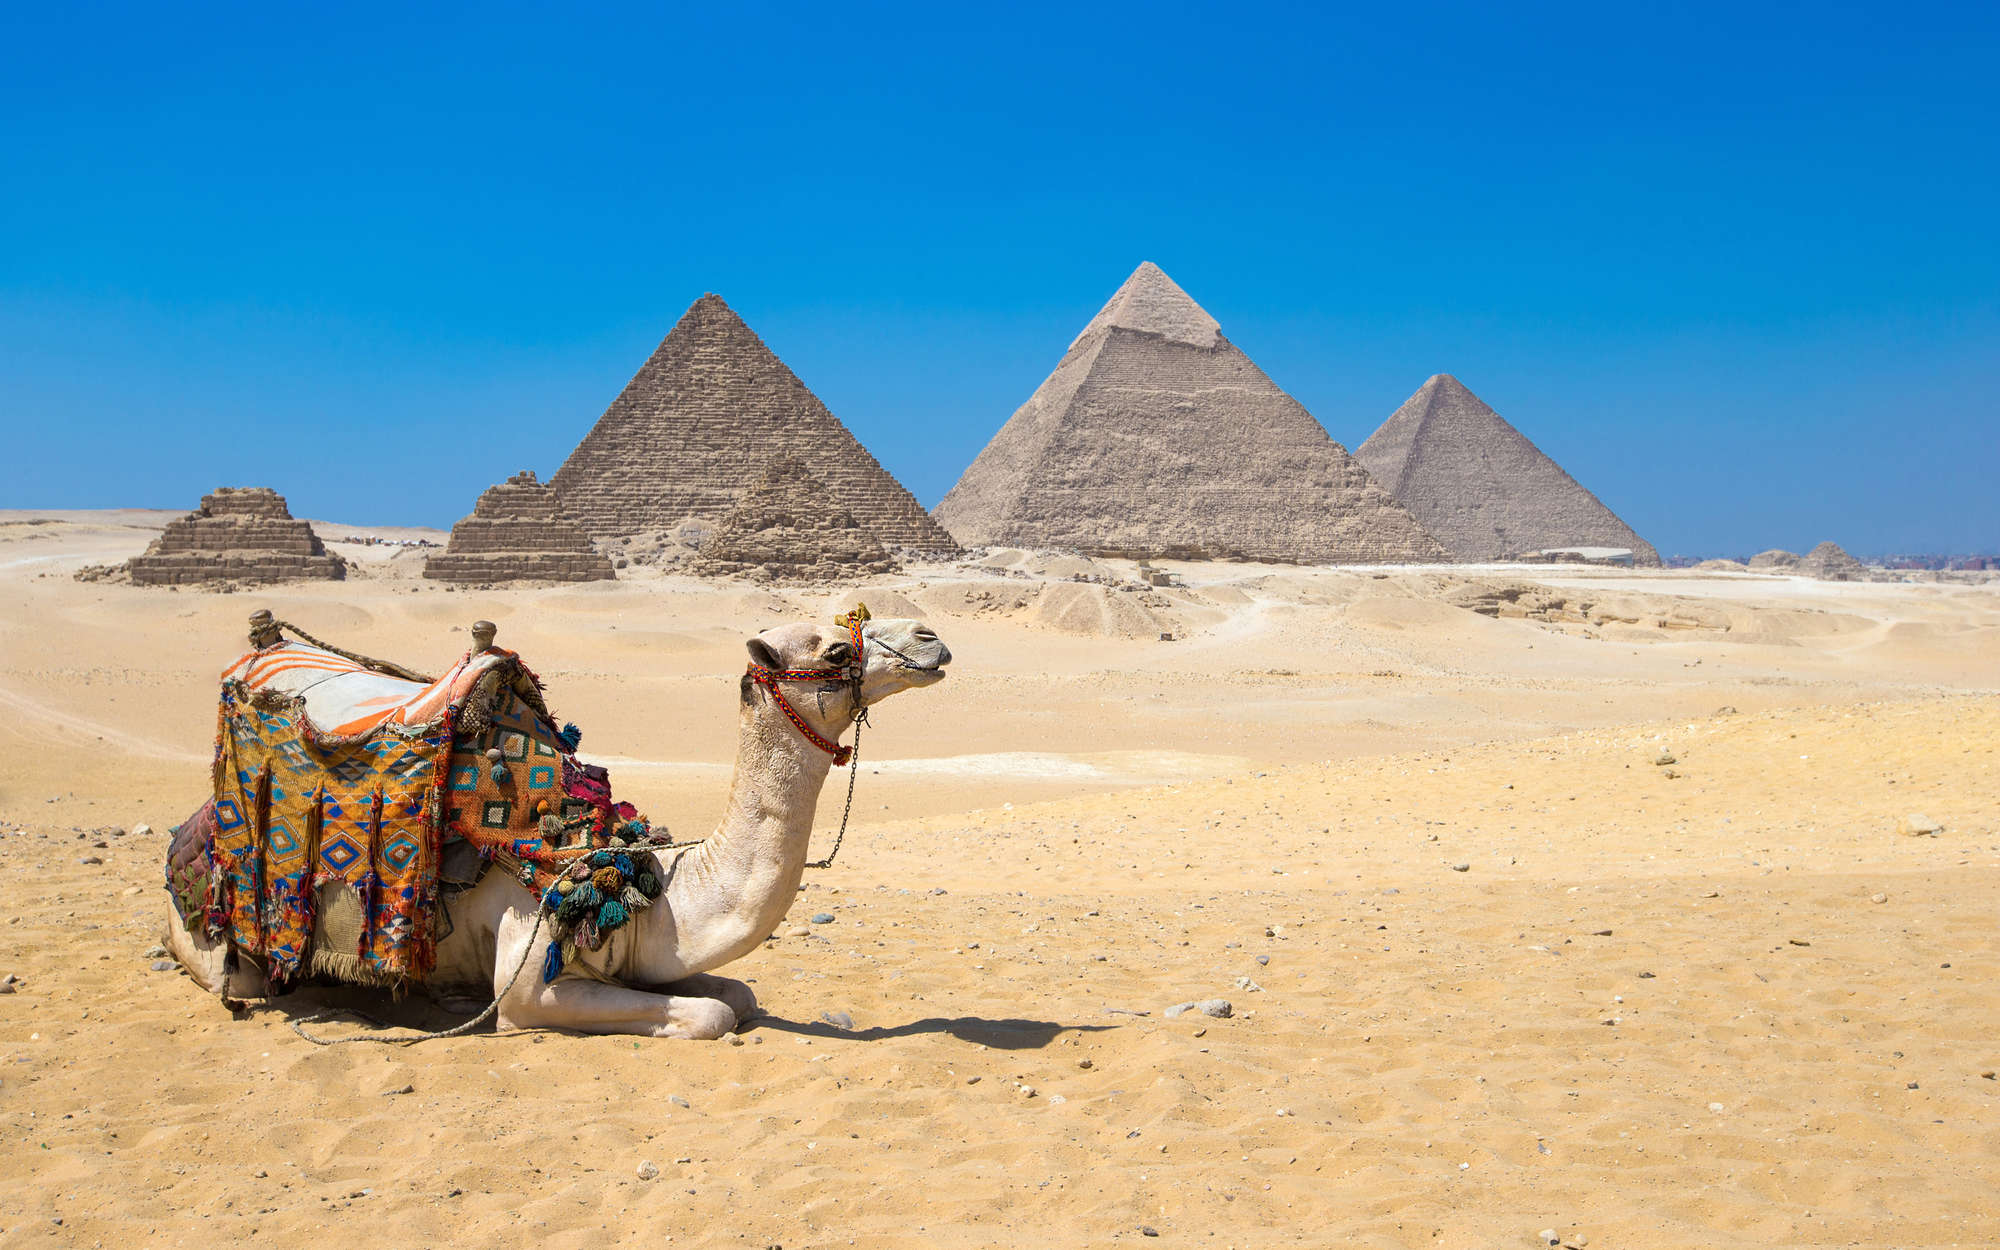             Fototapete Pyramiden von Gizeh mit Kamel – Mattes Glattvlies
        